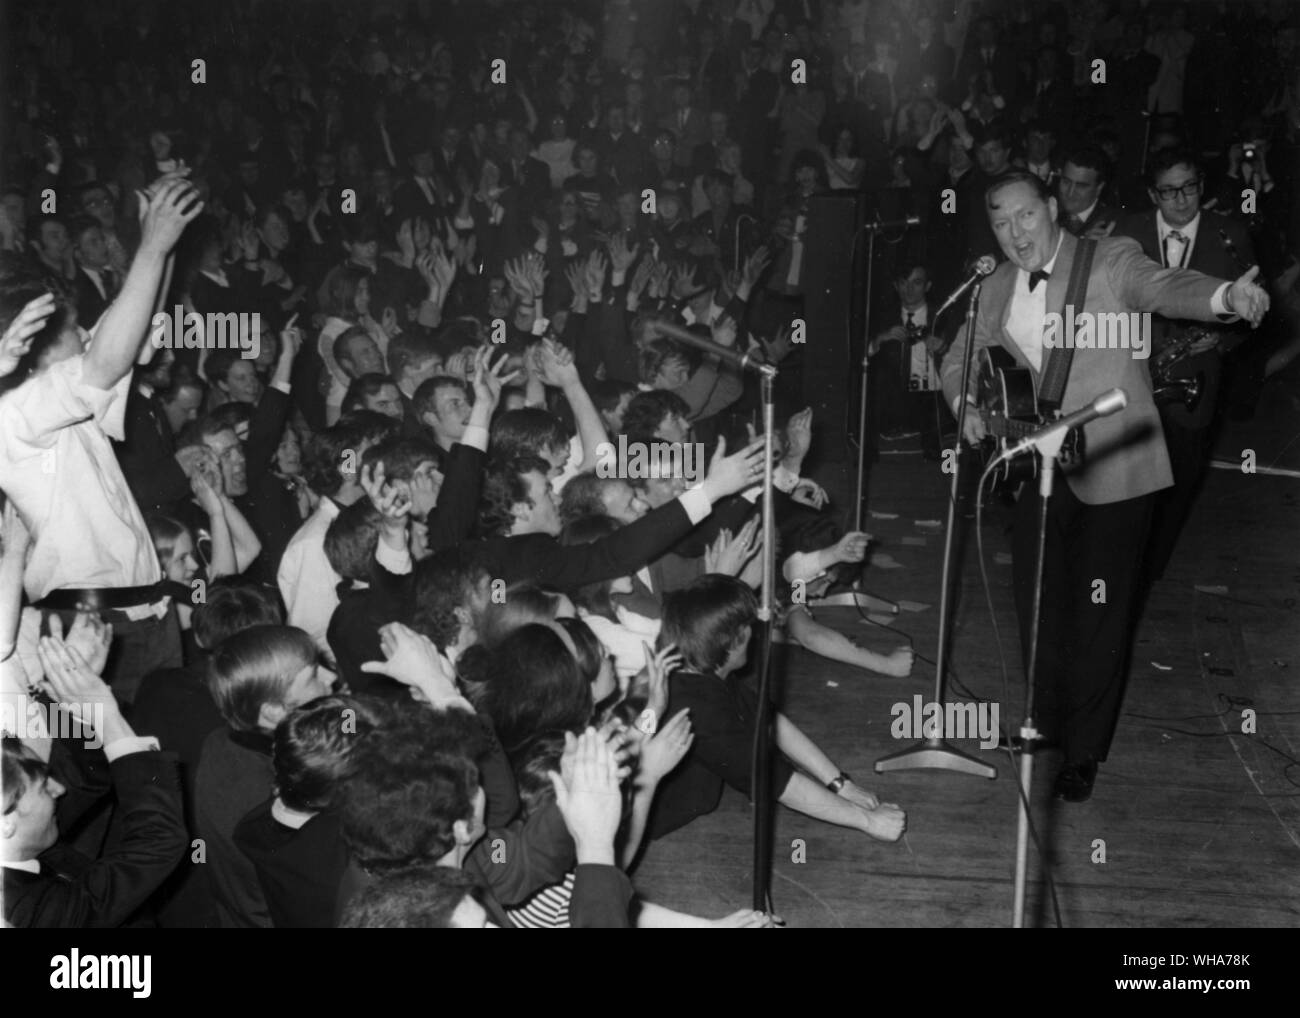 La foule des fans la scène du Royal Albert Hall 1er mai nous comme artiste rock and roll Bill Haley présente son groupe les comètes au début de la performance. 1er mai 1968 Banque D'Images